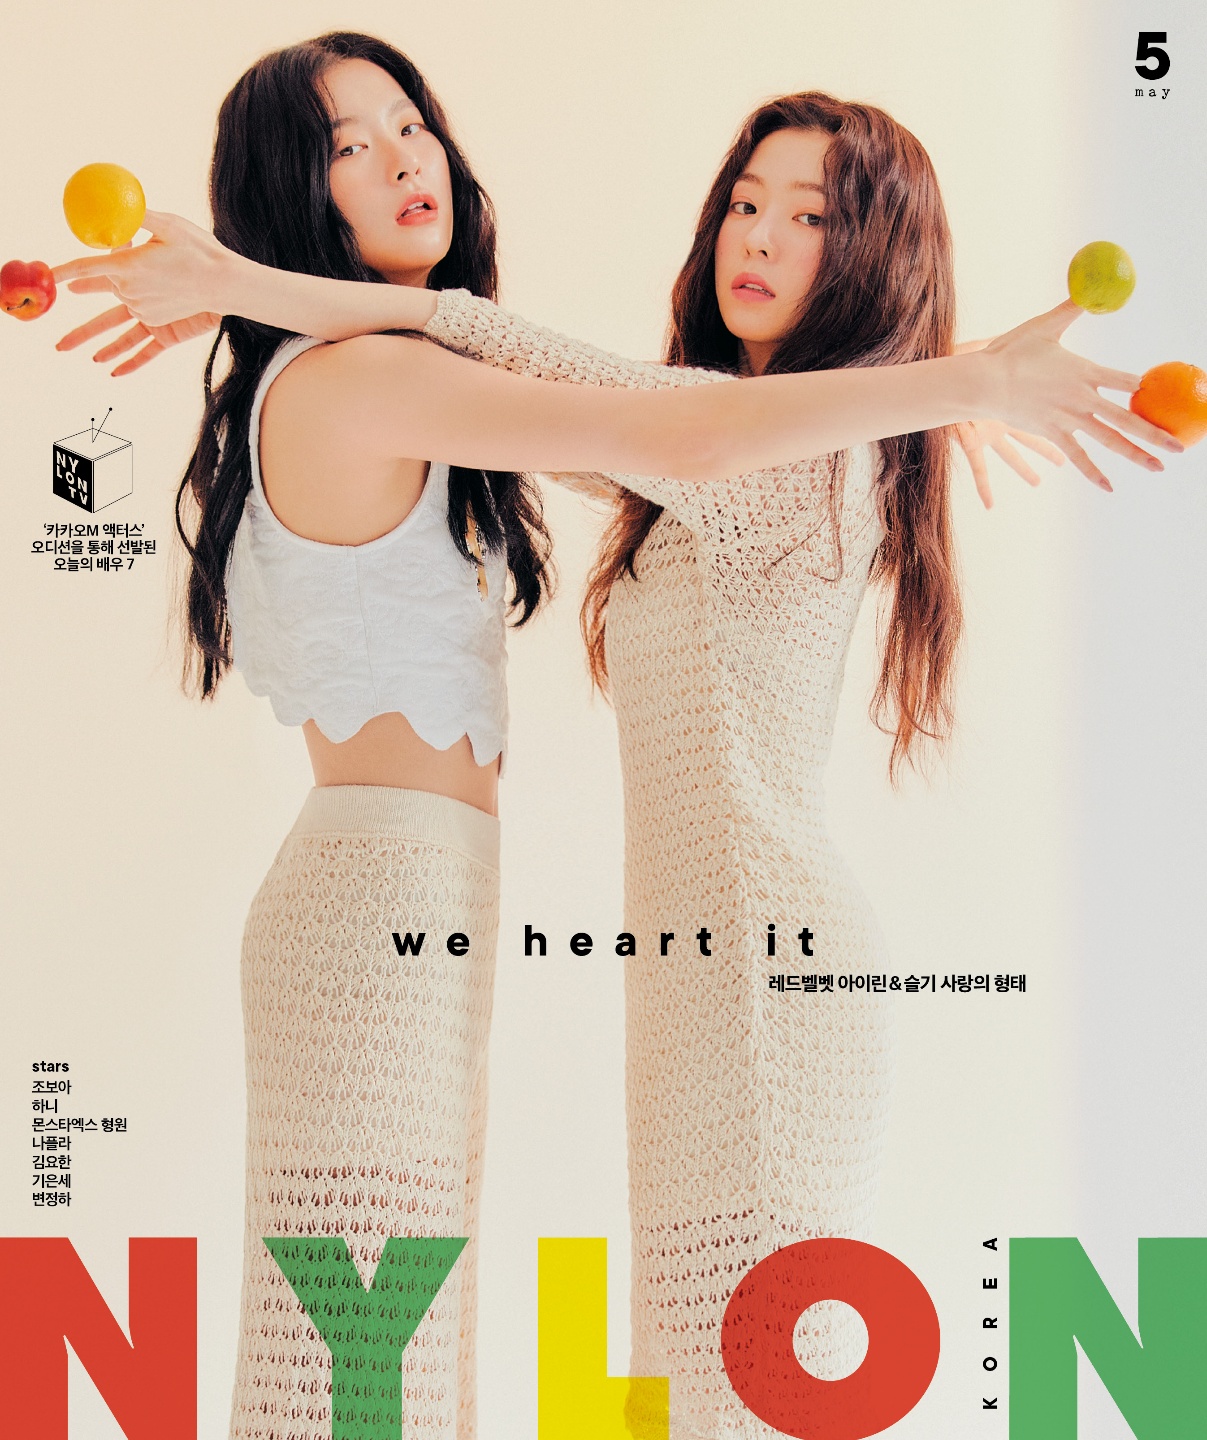 Red Velvet Irene & SEULGI, intense transformation with new song 'Monster'